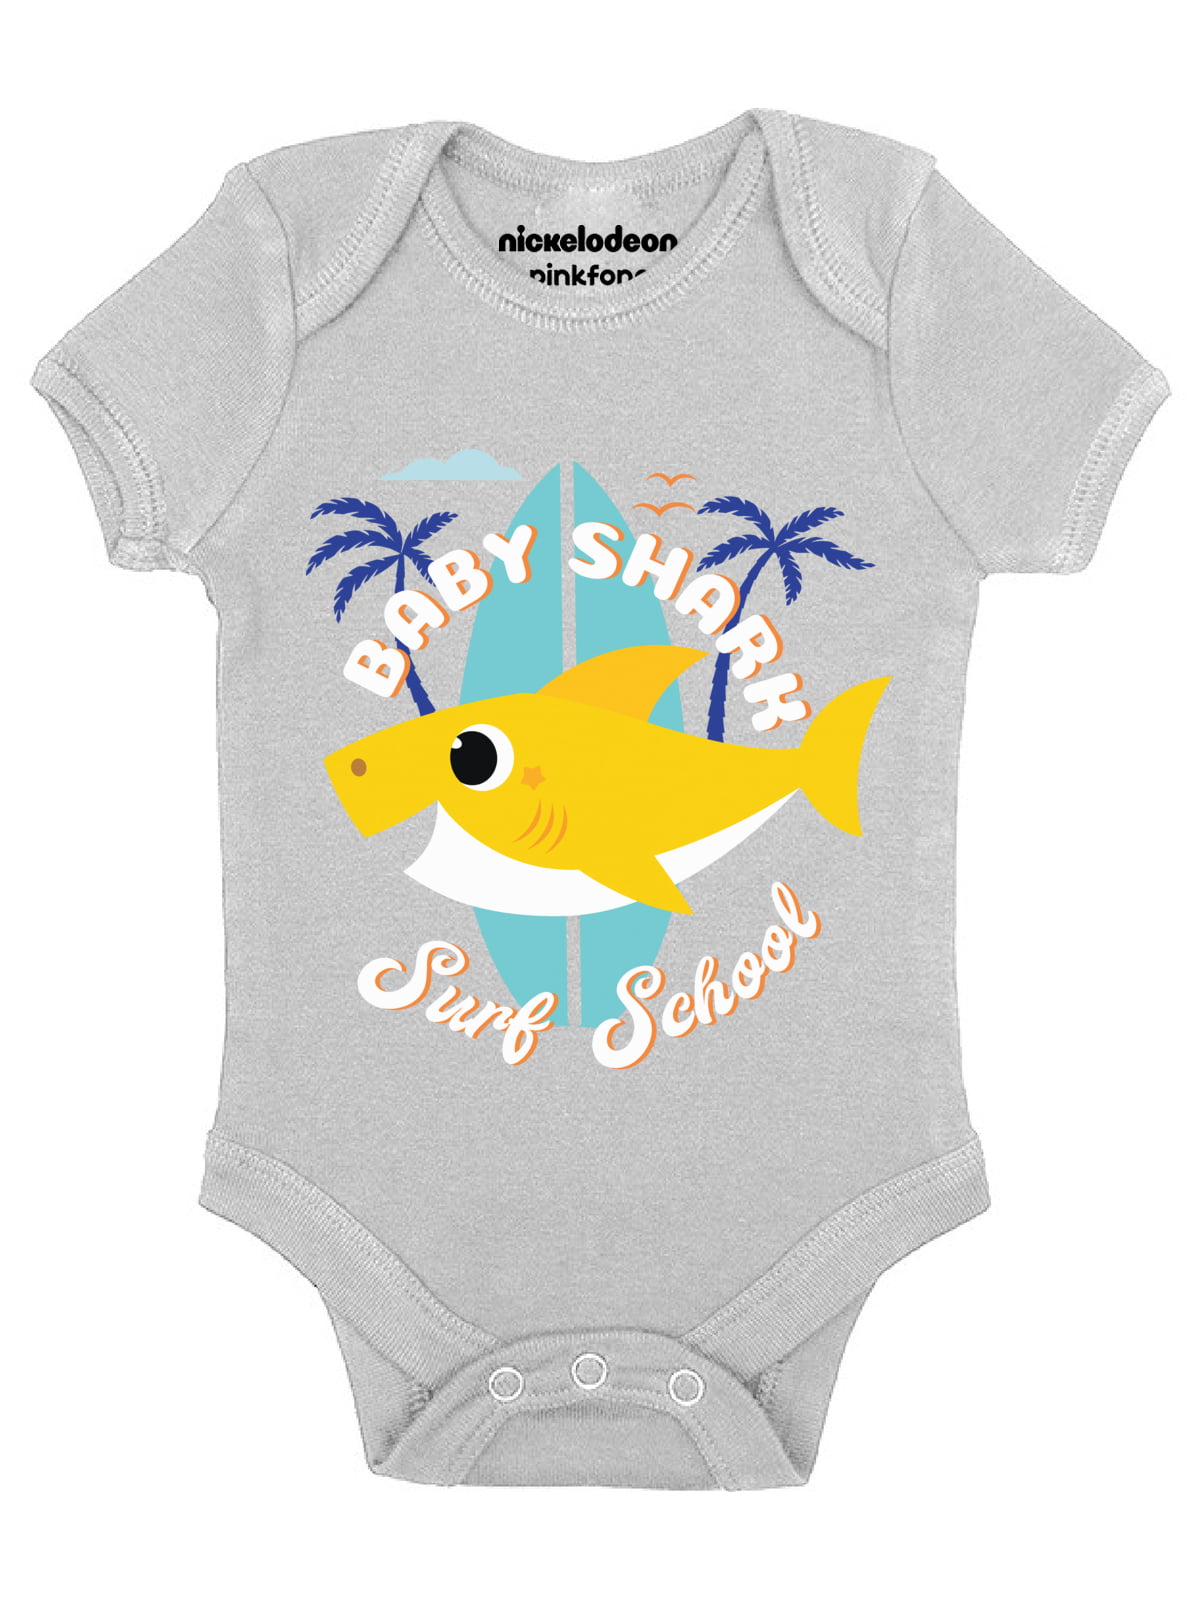 Baby Shark Cool Matching Shirt for Baby Boys Girls - Surf School Yellow Bodysuit NB 6Months 18M 24 Months - Walmart.com